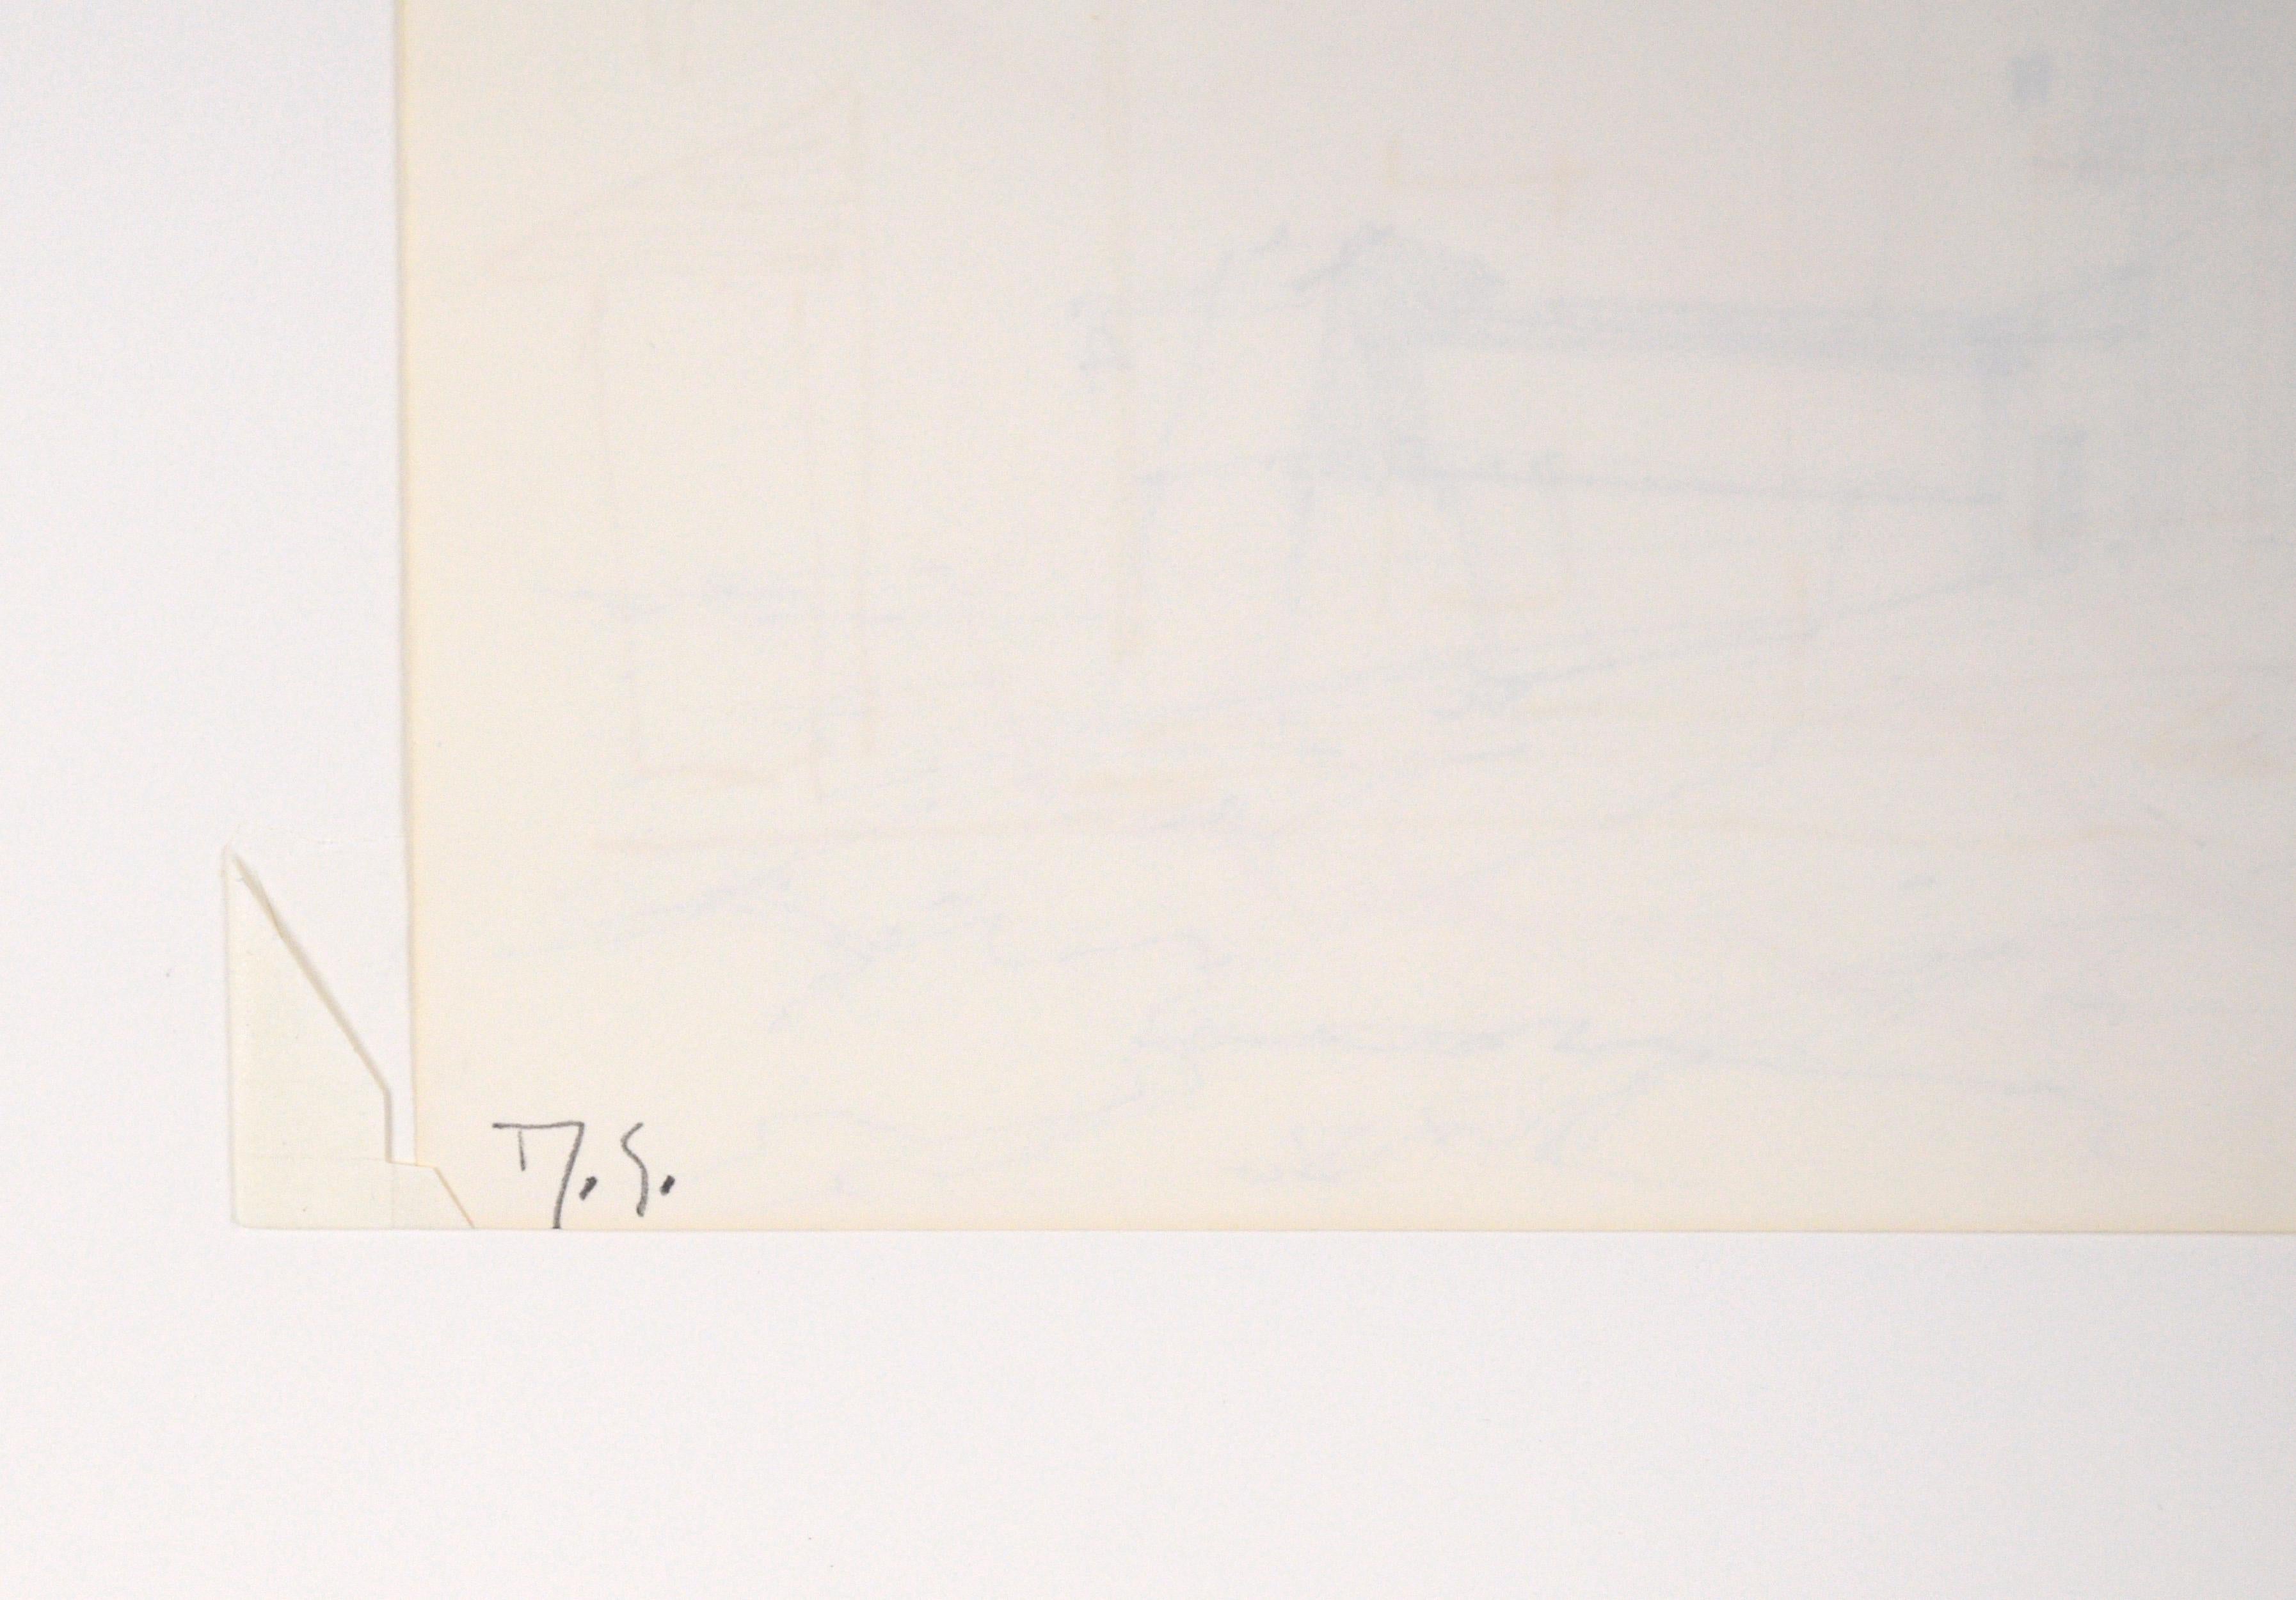 Leuchtturm am Ufer Maine - Impressionistische Original Federzeichnung Landschaft

Zarte Landschaftszeichnung mit Feder und Tusche des in Maine lebenden Künstlers Laurence Sisson (Amerikaner, 1928-2015). Ein Leuchtturm und ein weiteres Bauwerk stehen